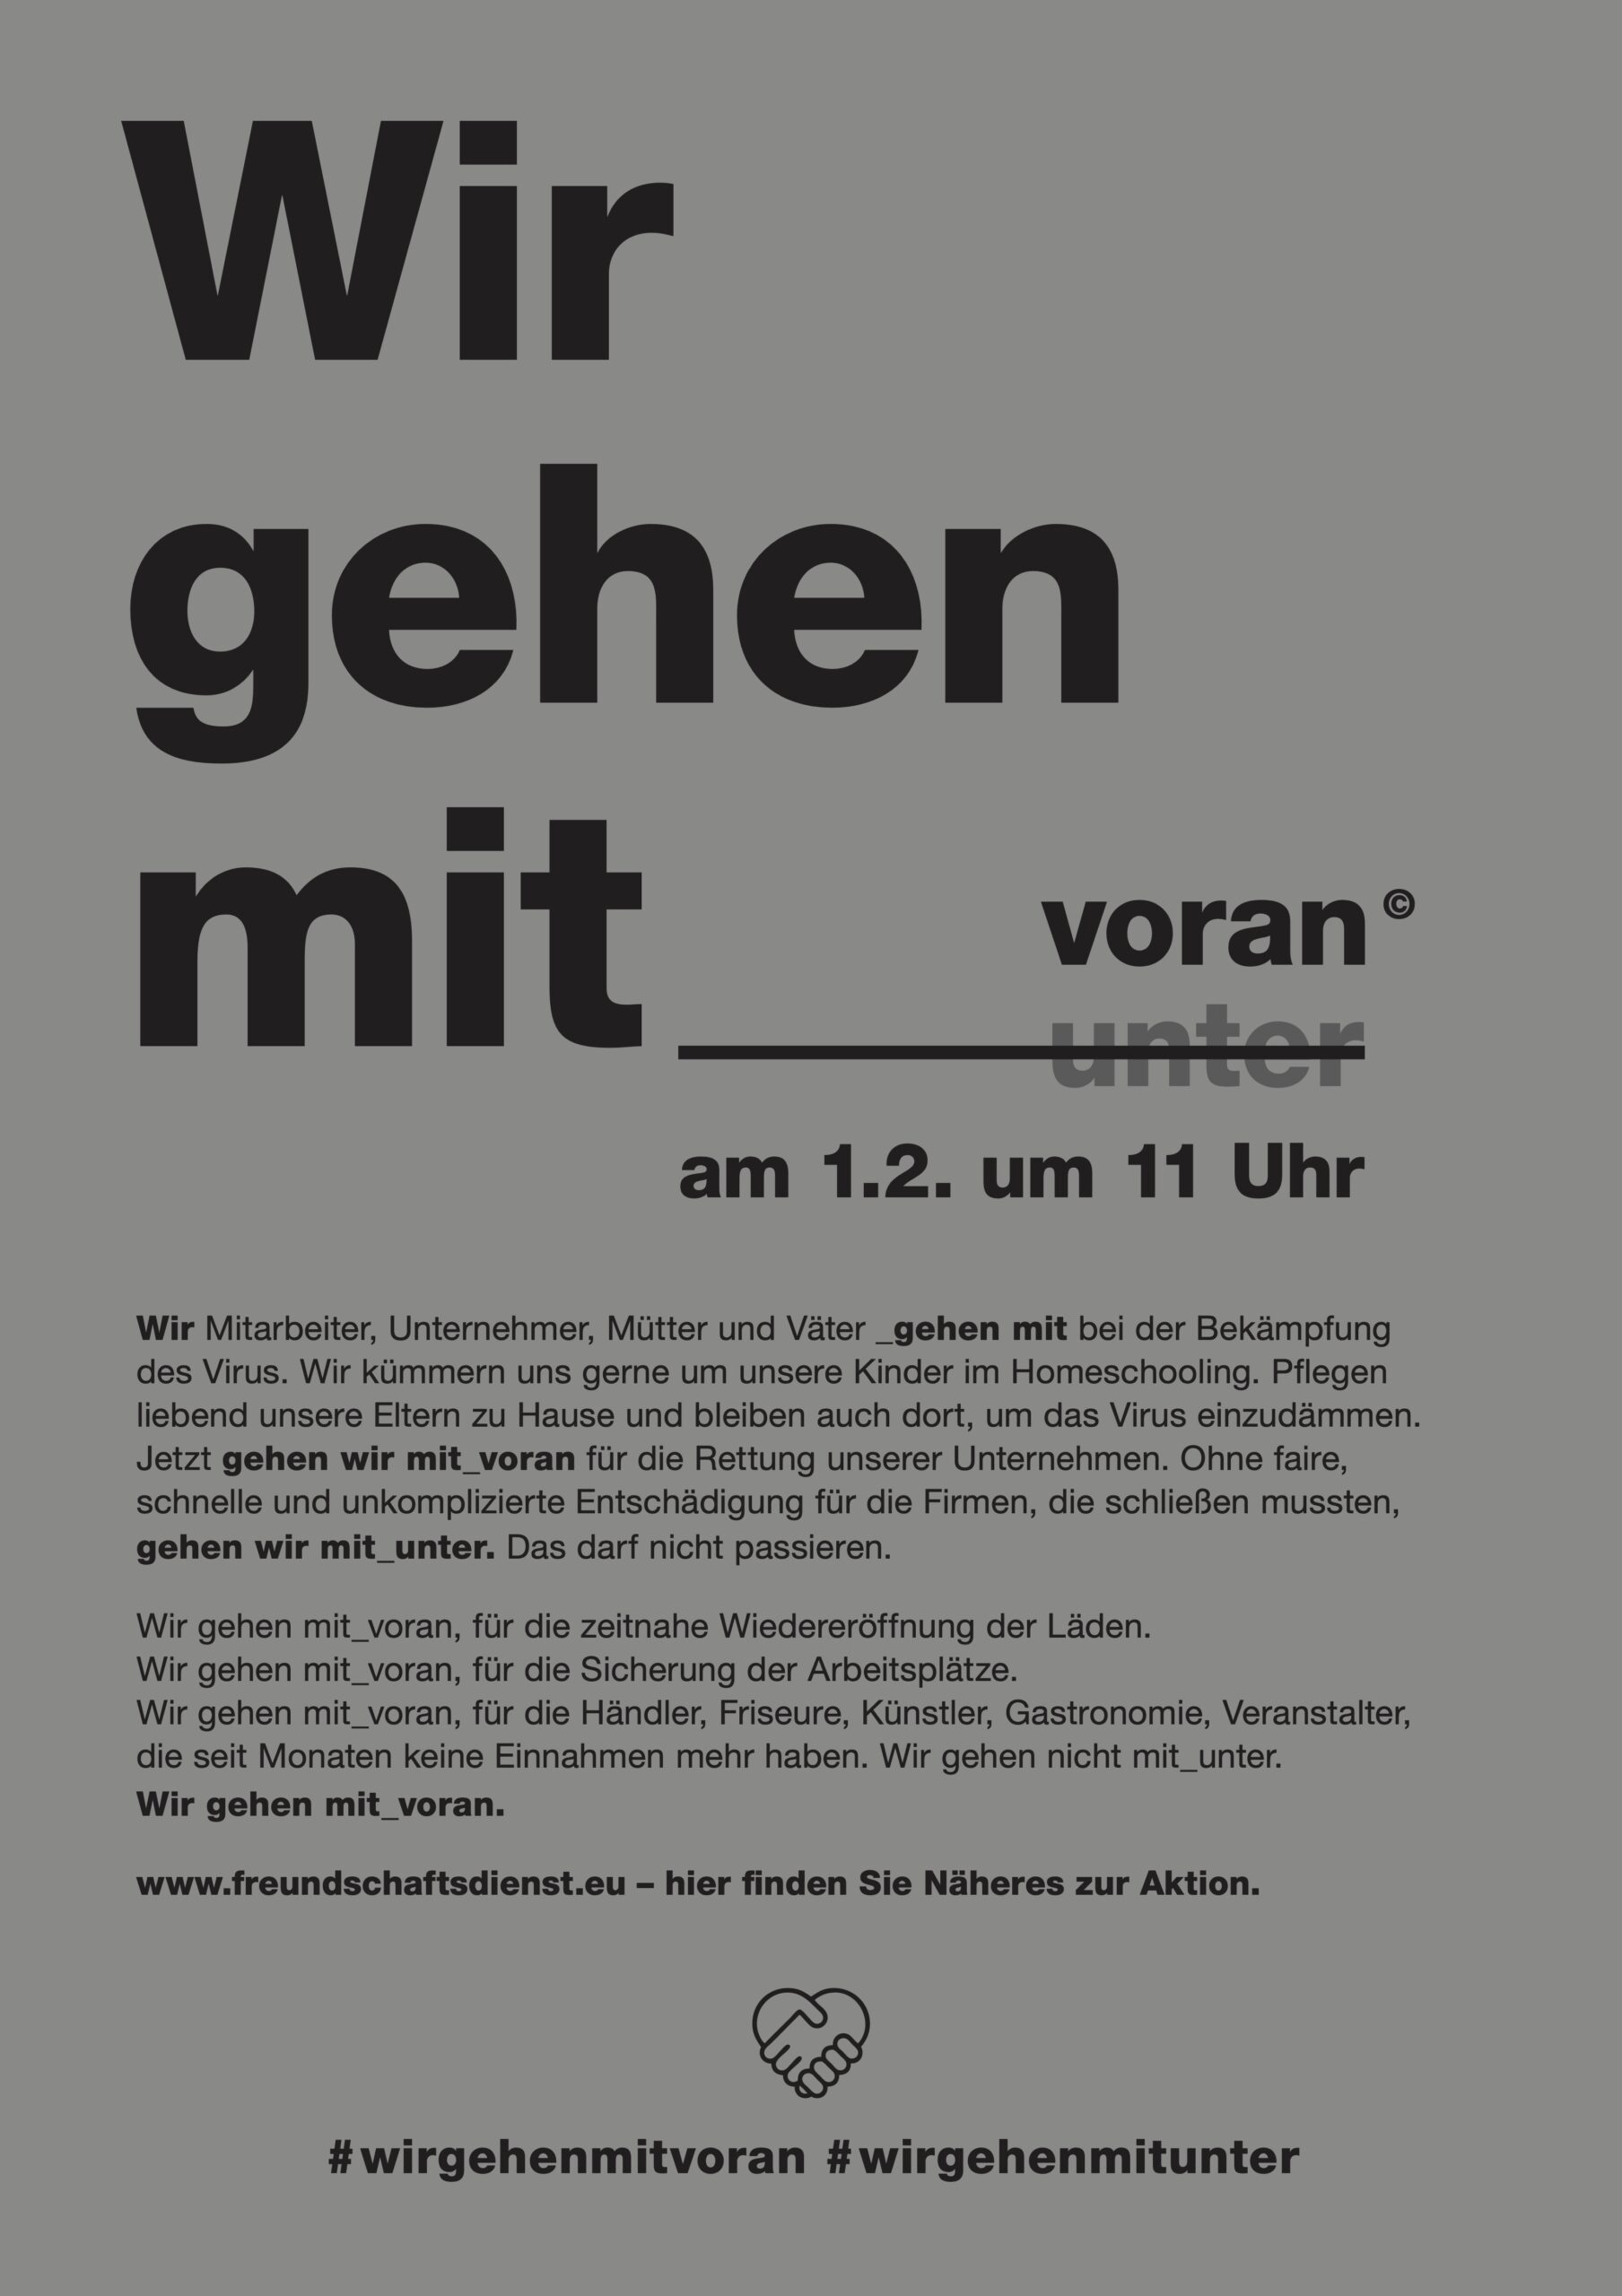 Featured image for “Wir gehen mit___voran”